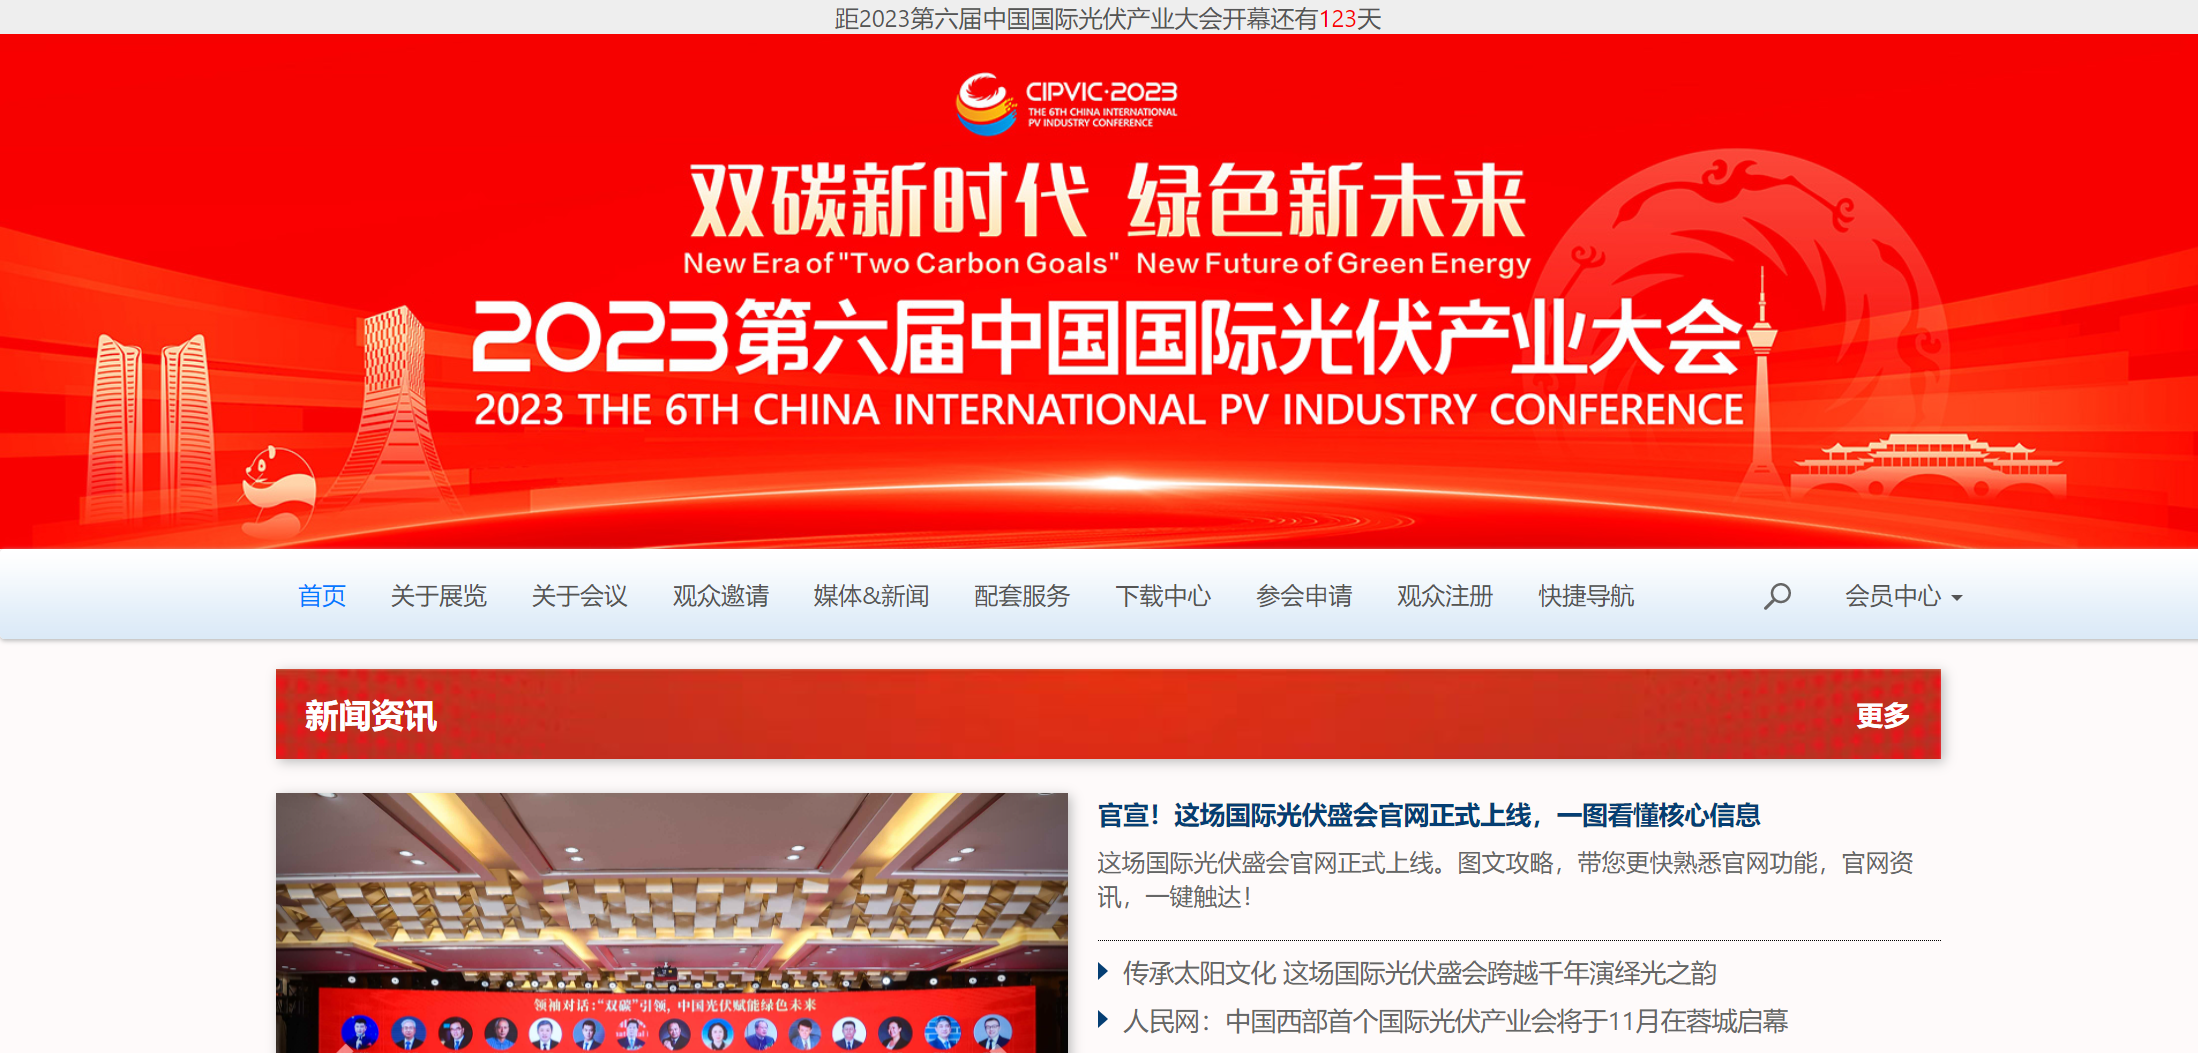 全球光伏共襄盛会 2023第六届中国国际光伏产业大会官方网站正式上线！龙珠体育(图1)